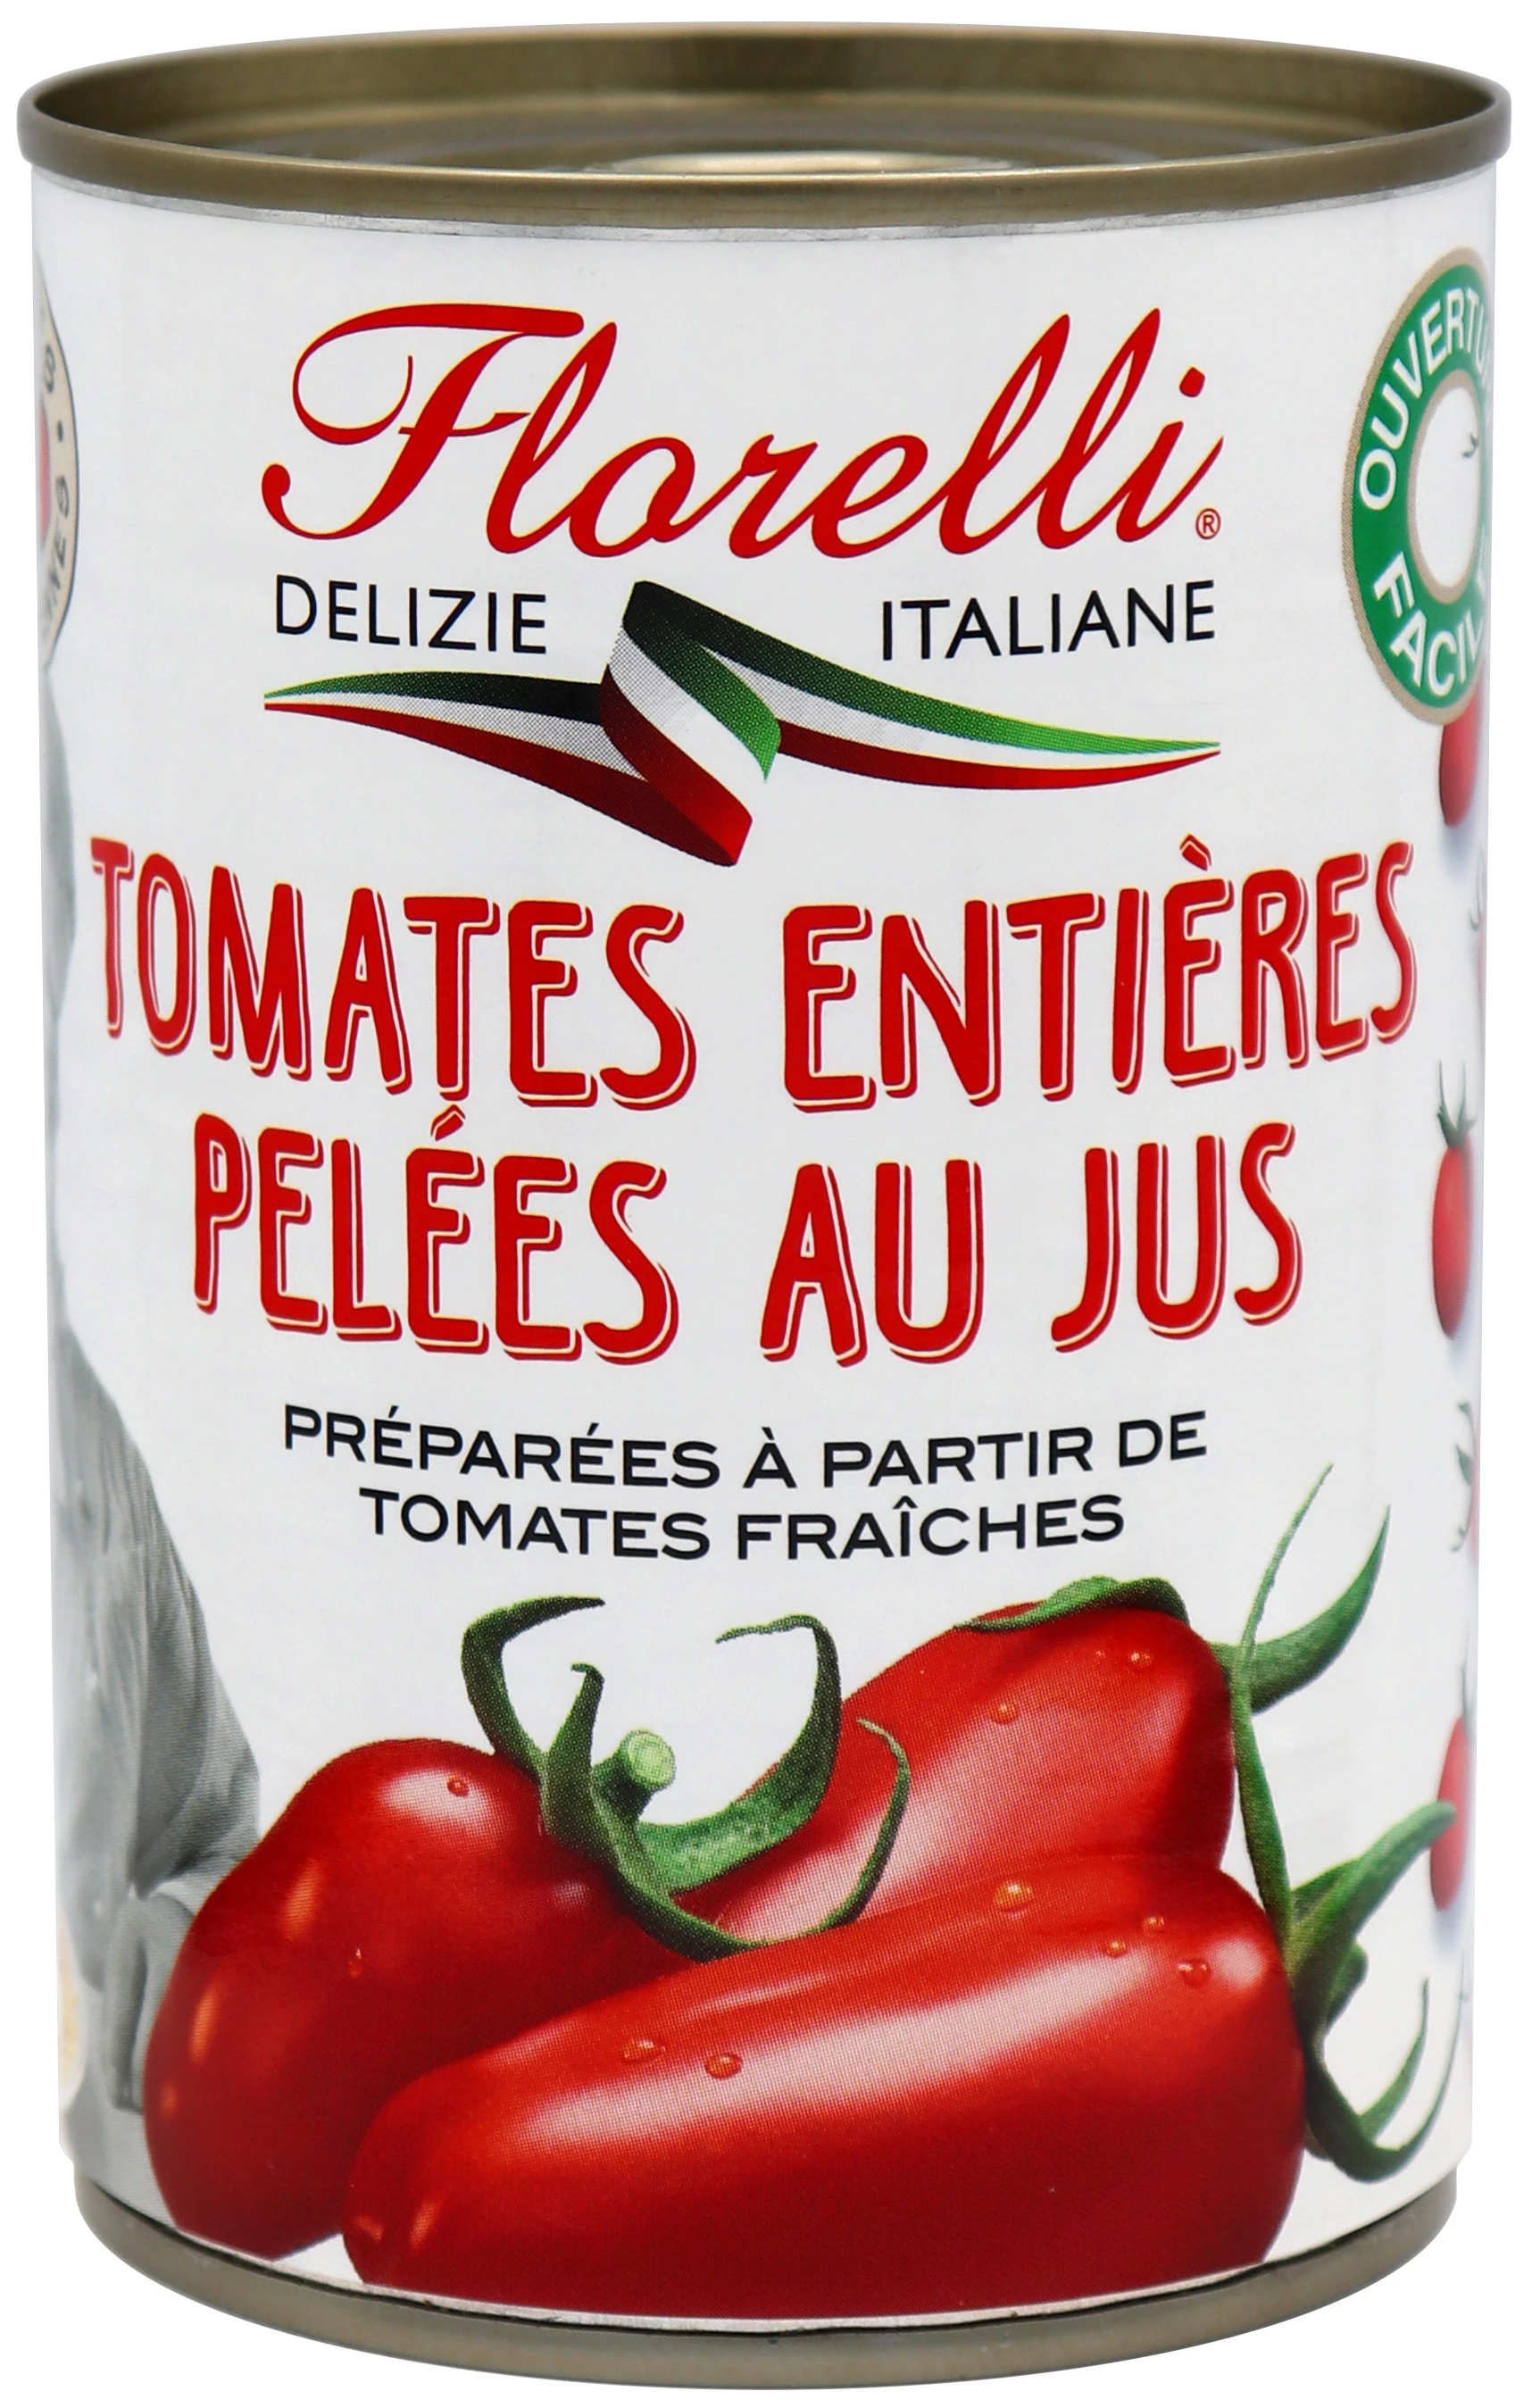 Tomate Entieres Pelées au Jus; 400g  - SAINT ELOI